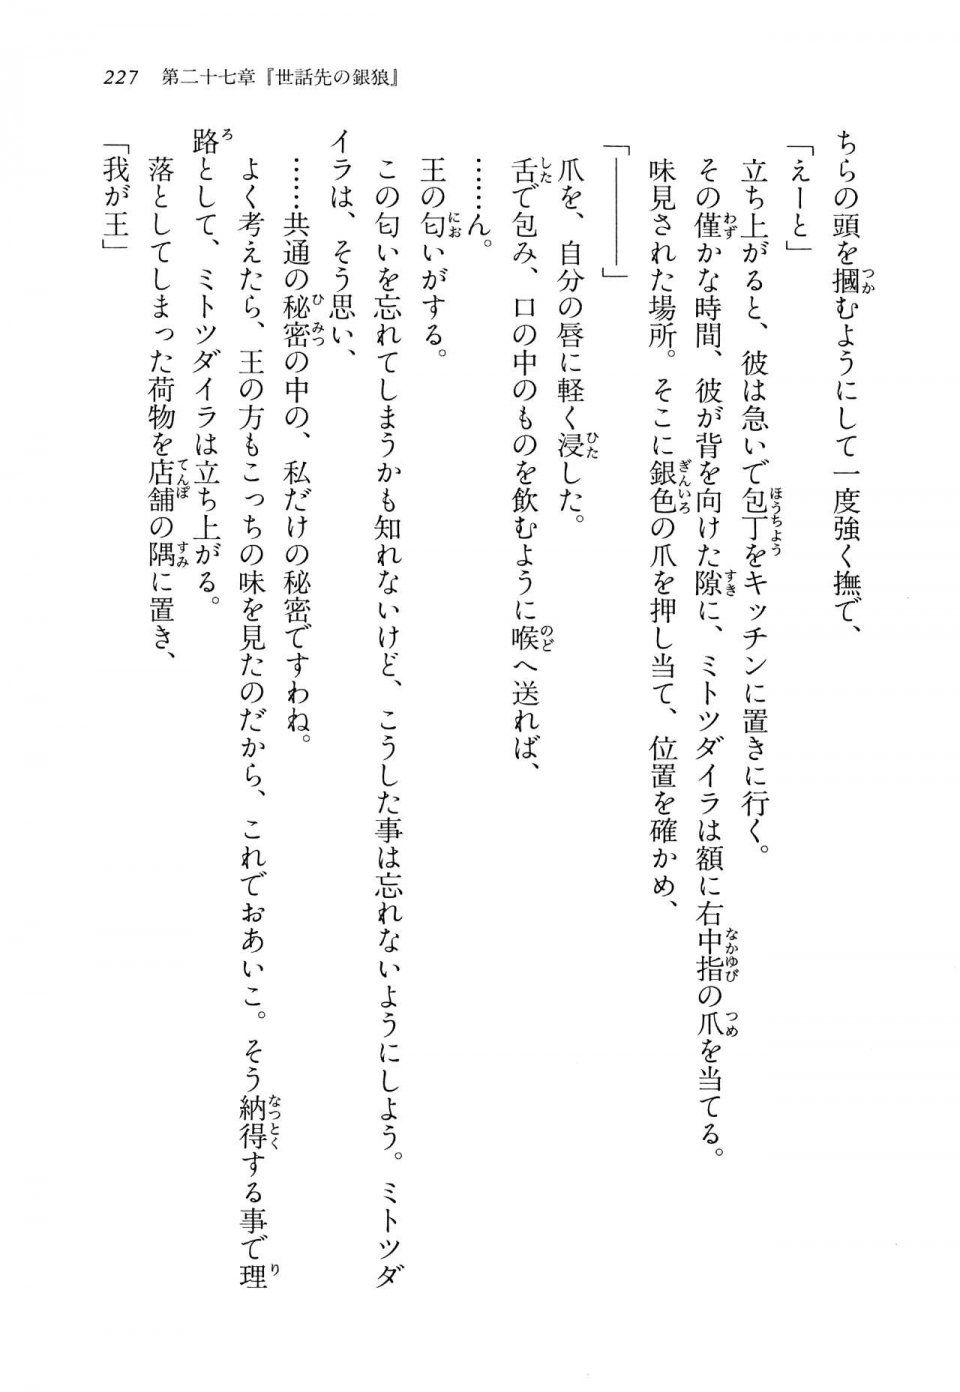 Kyoukai Senjou no Horizon LN Vol 14(6B) - Photo #227